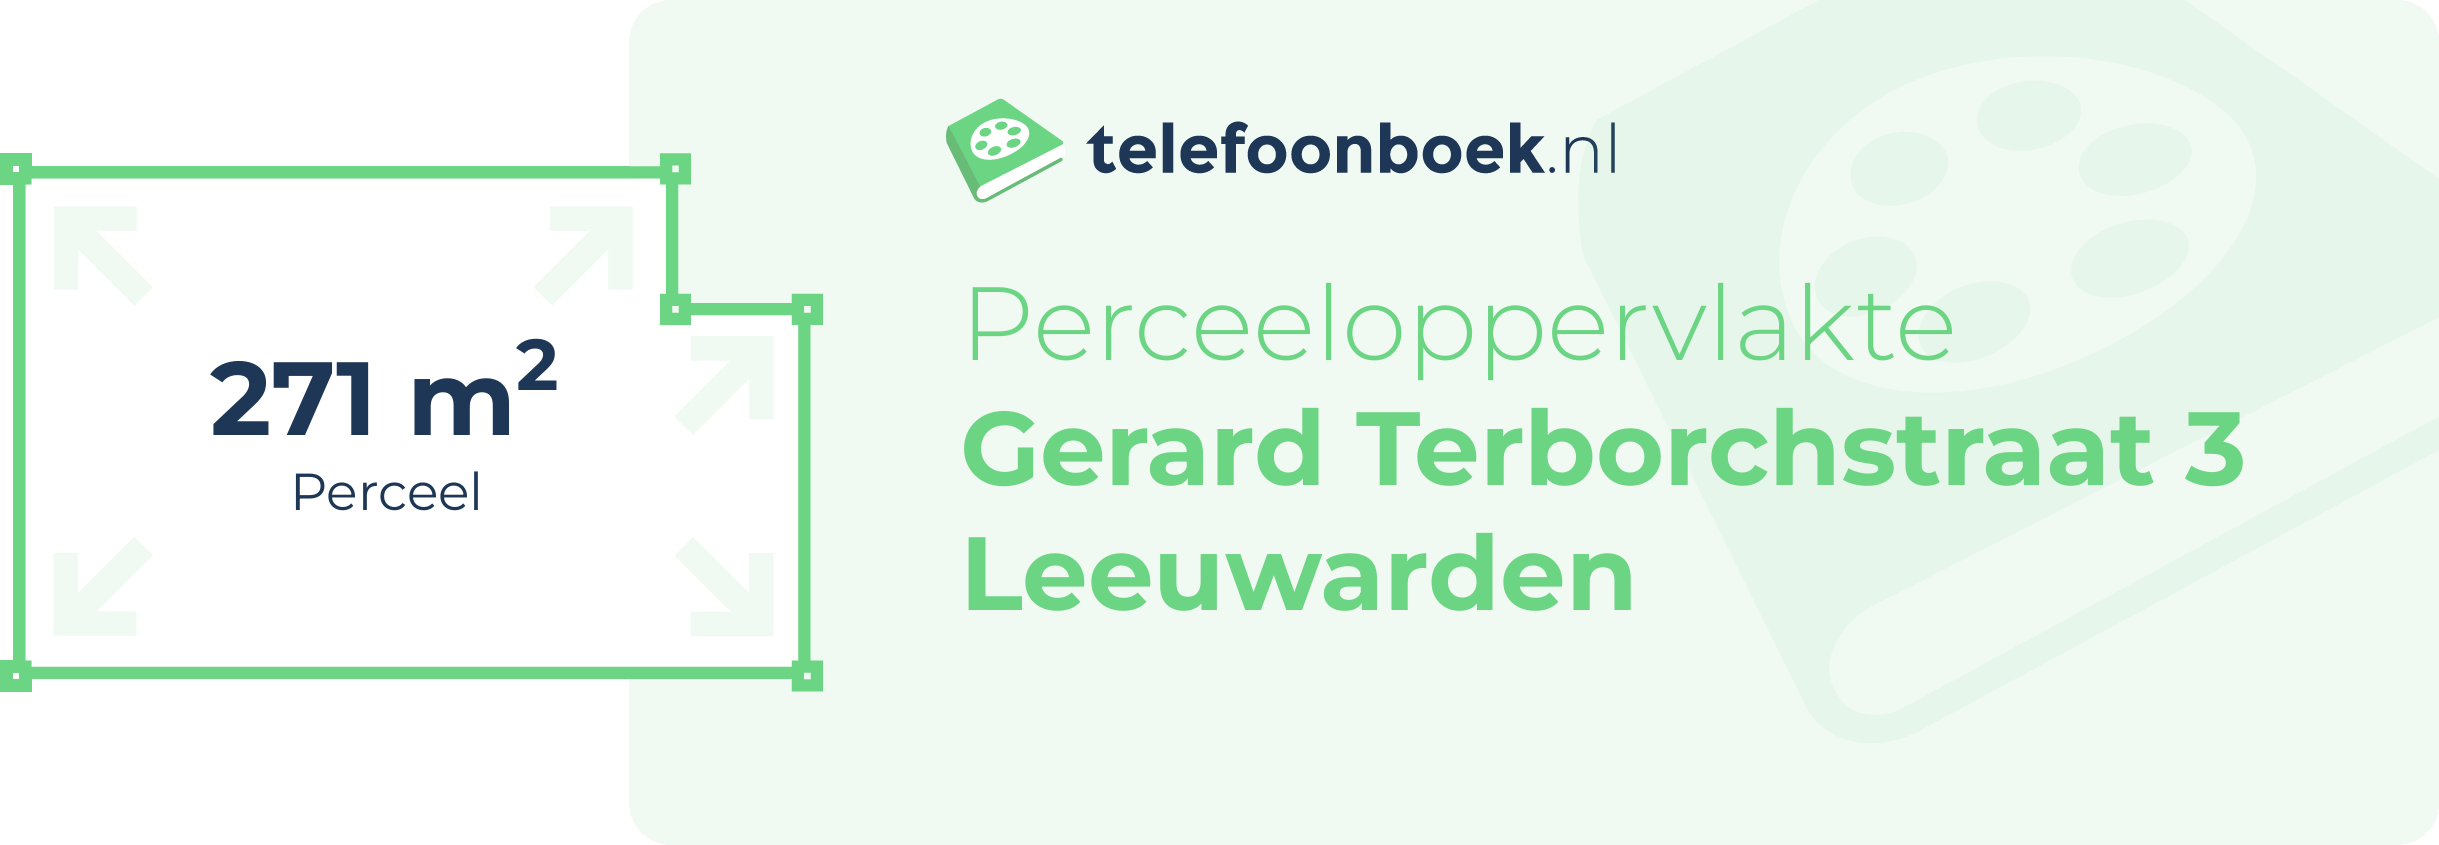 Perceeloppervlakte Gerard Terborchstraat 3 Leeuwarden